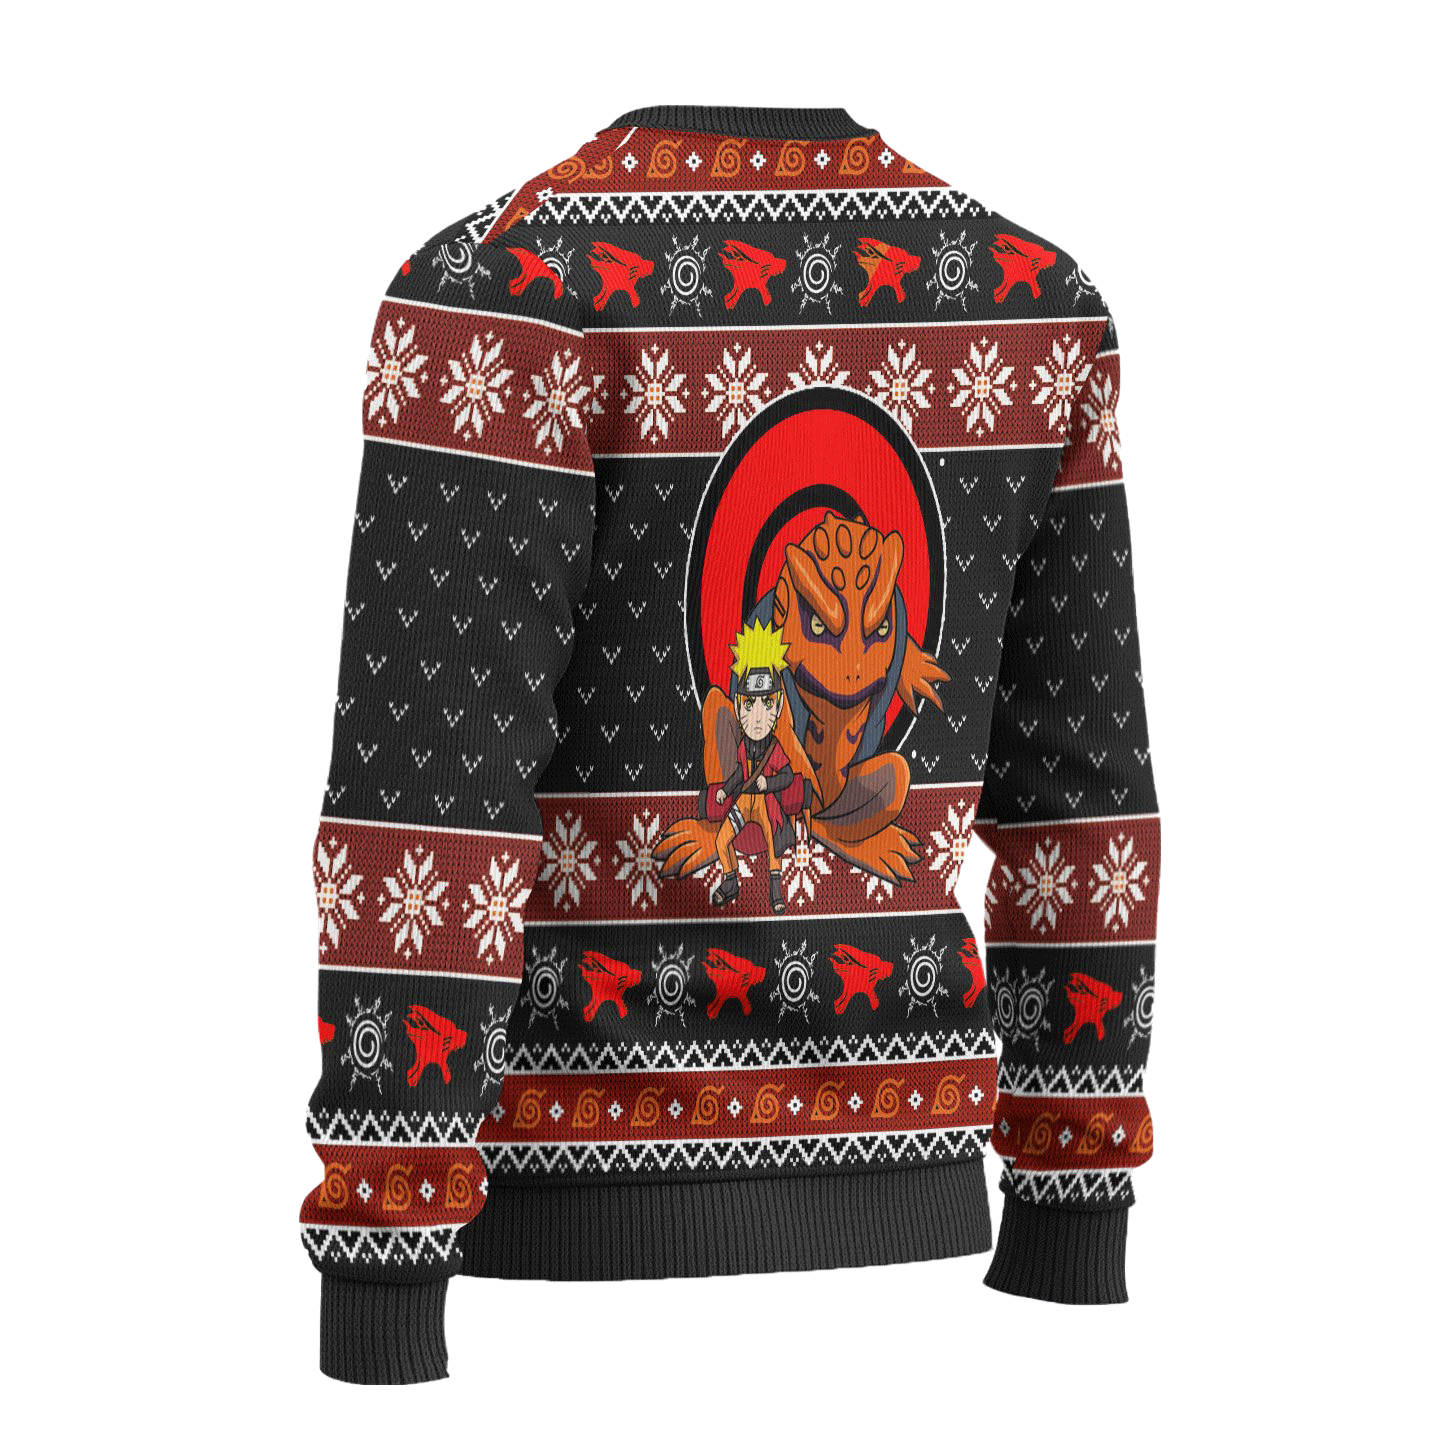 Naruto Sage Mode Anime Ugly Christmas Sweater Xmas Gift